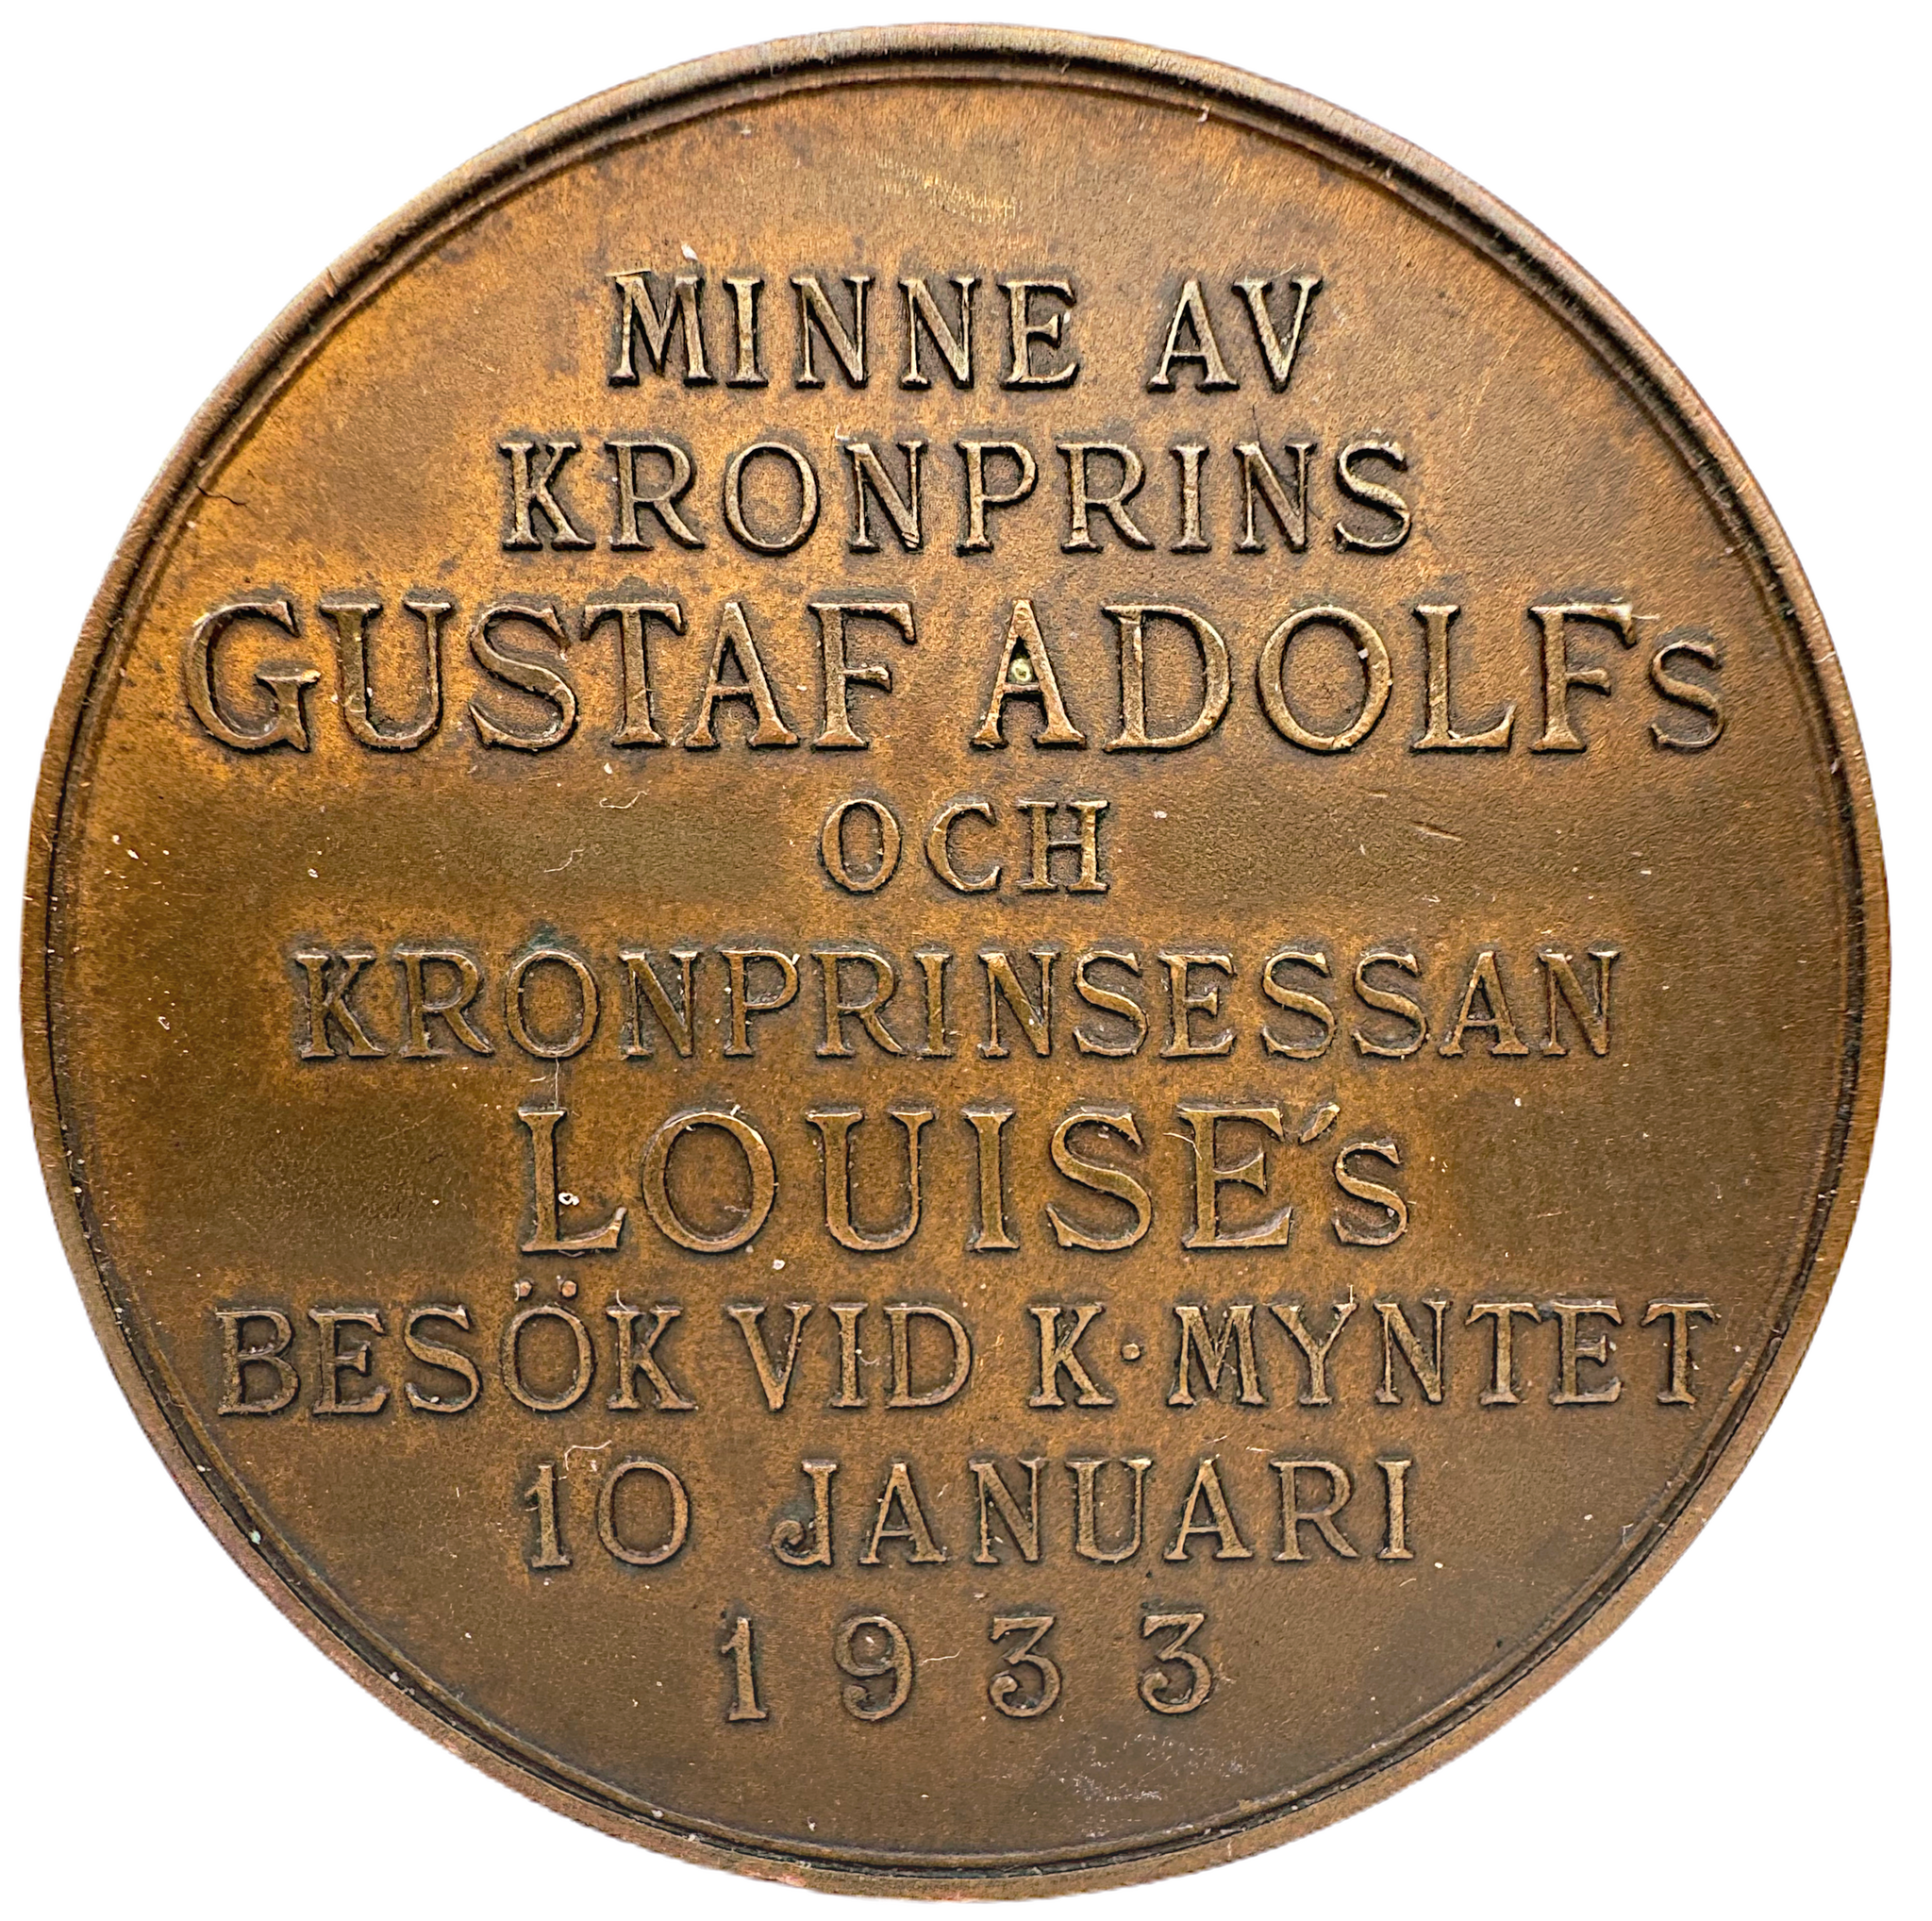 Kronprins Gustav (VI) Adolf och Louises besök på det Kungliga Myntverket 1933 - Av Erik Lindberg